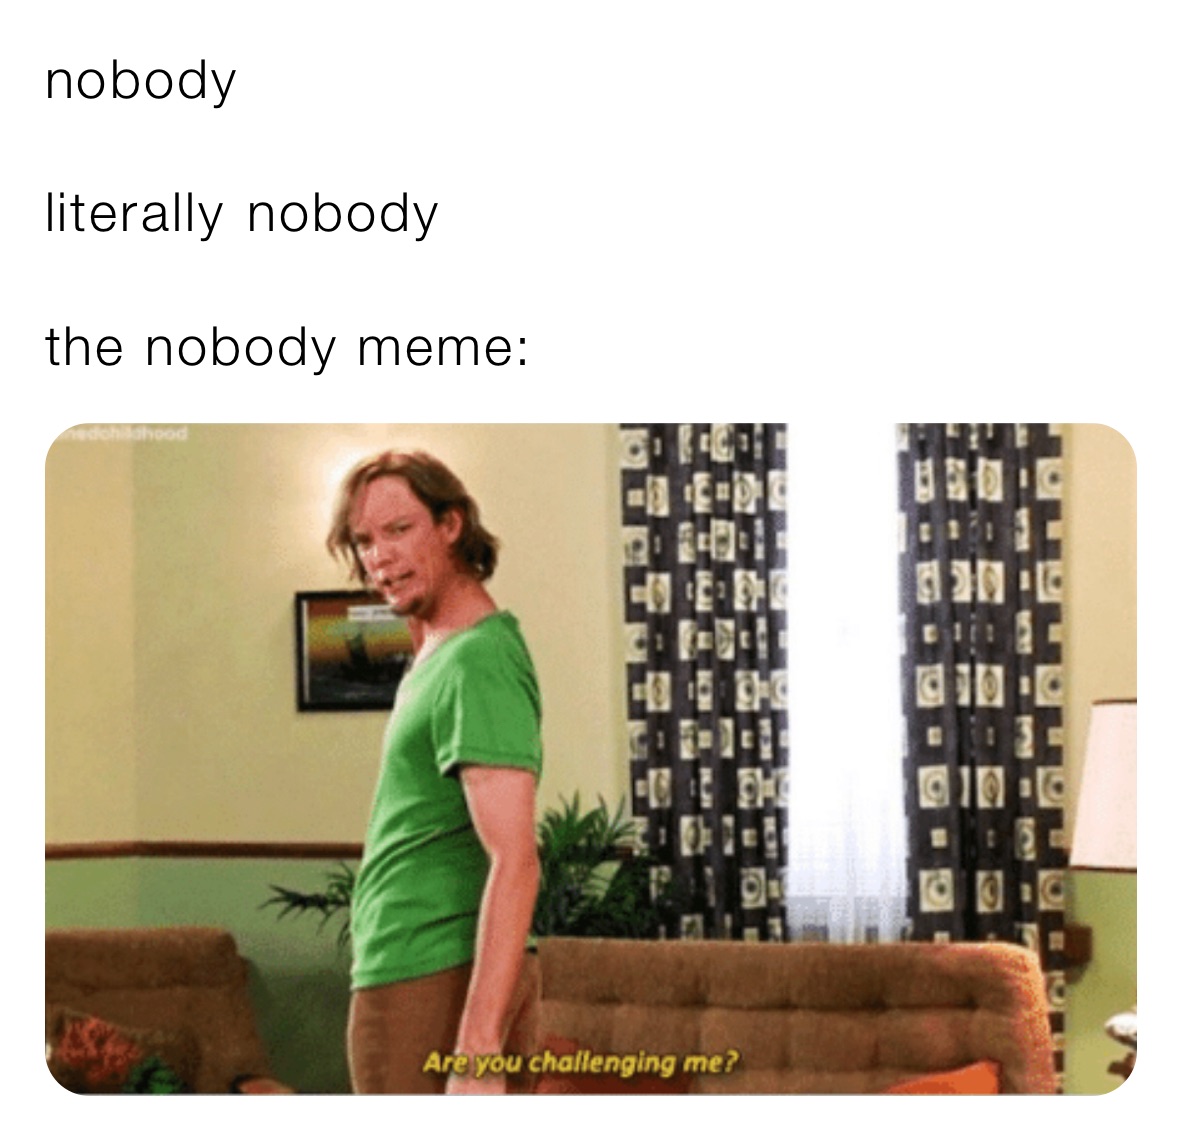 nobody

literally￼ nobody 

the nobody meme: